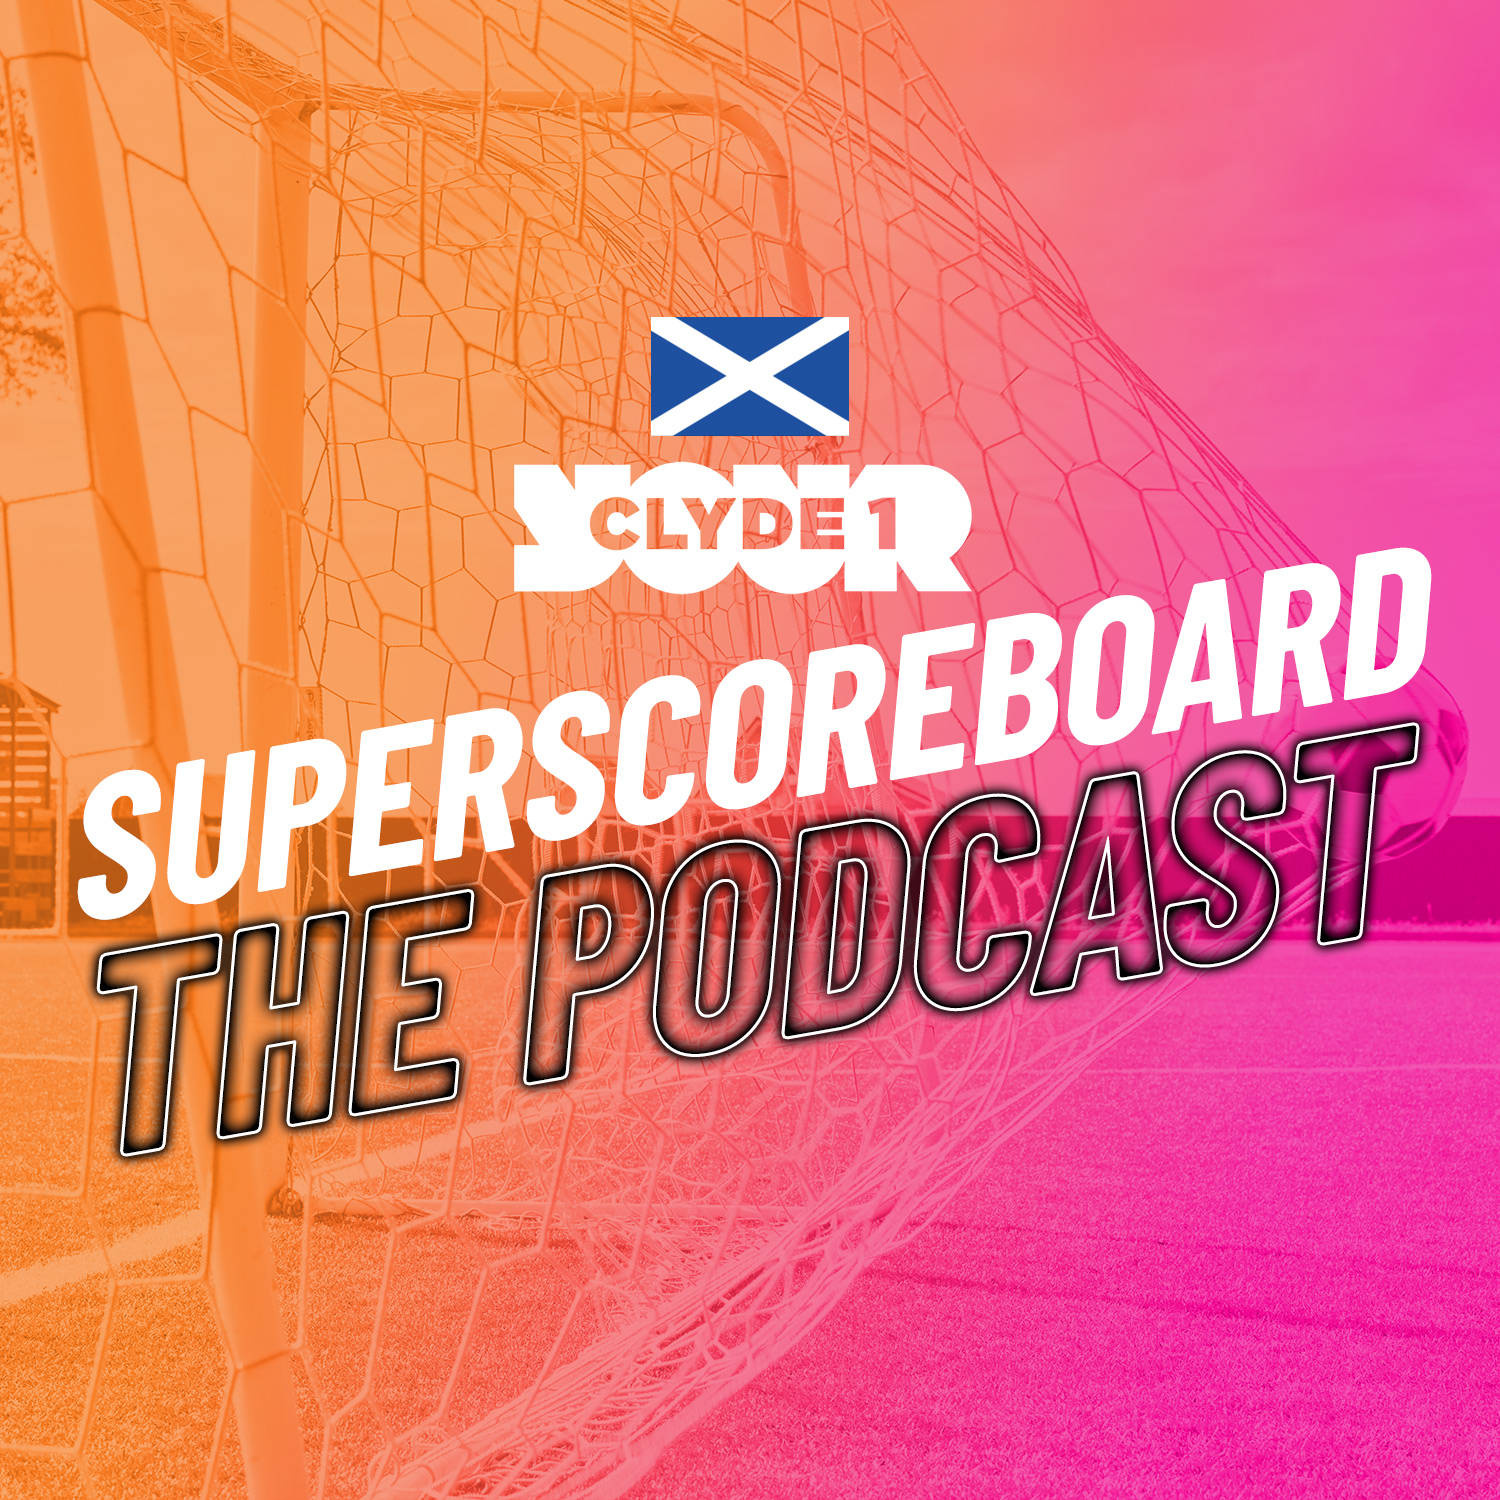 Monday 27th November 2023 Clyde 1 Superscoreboard